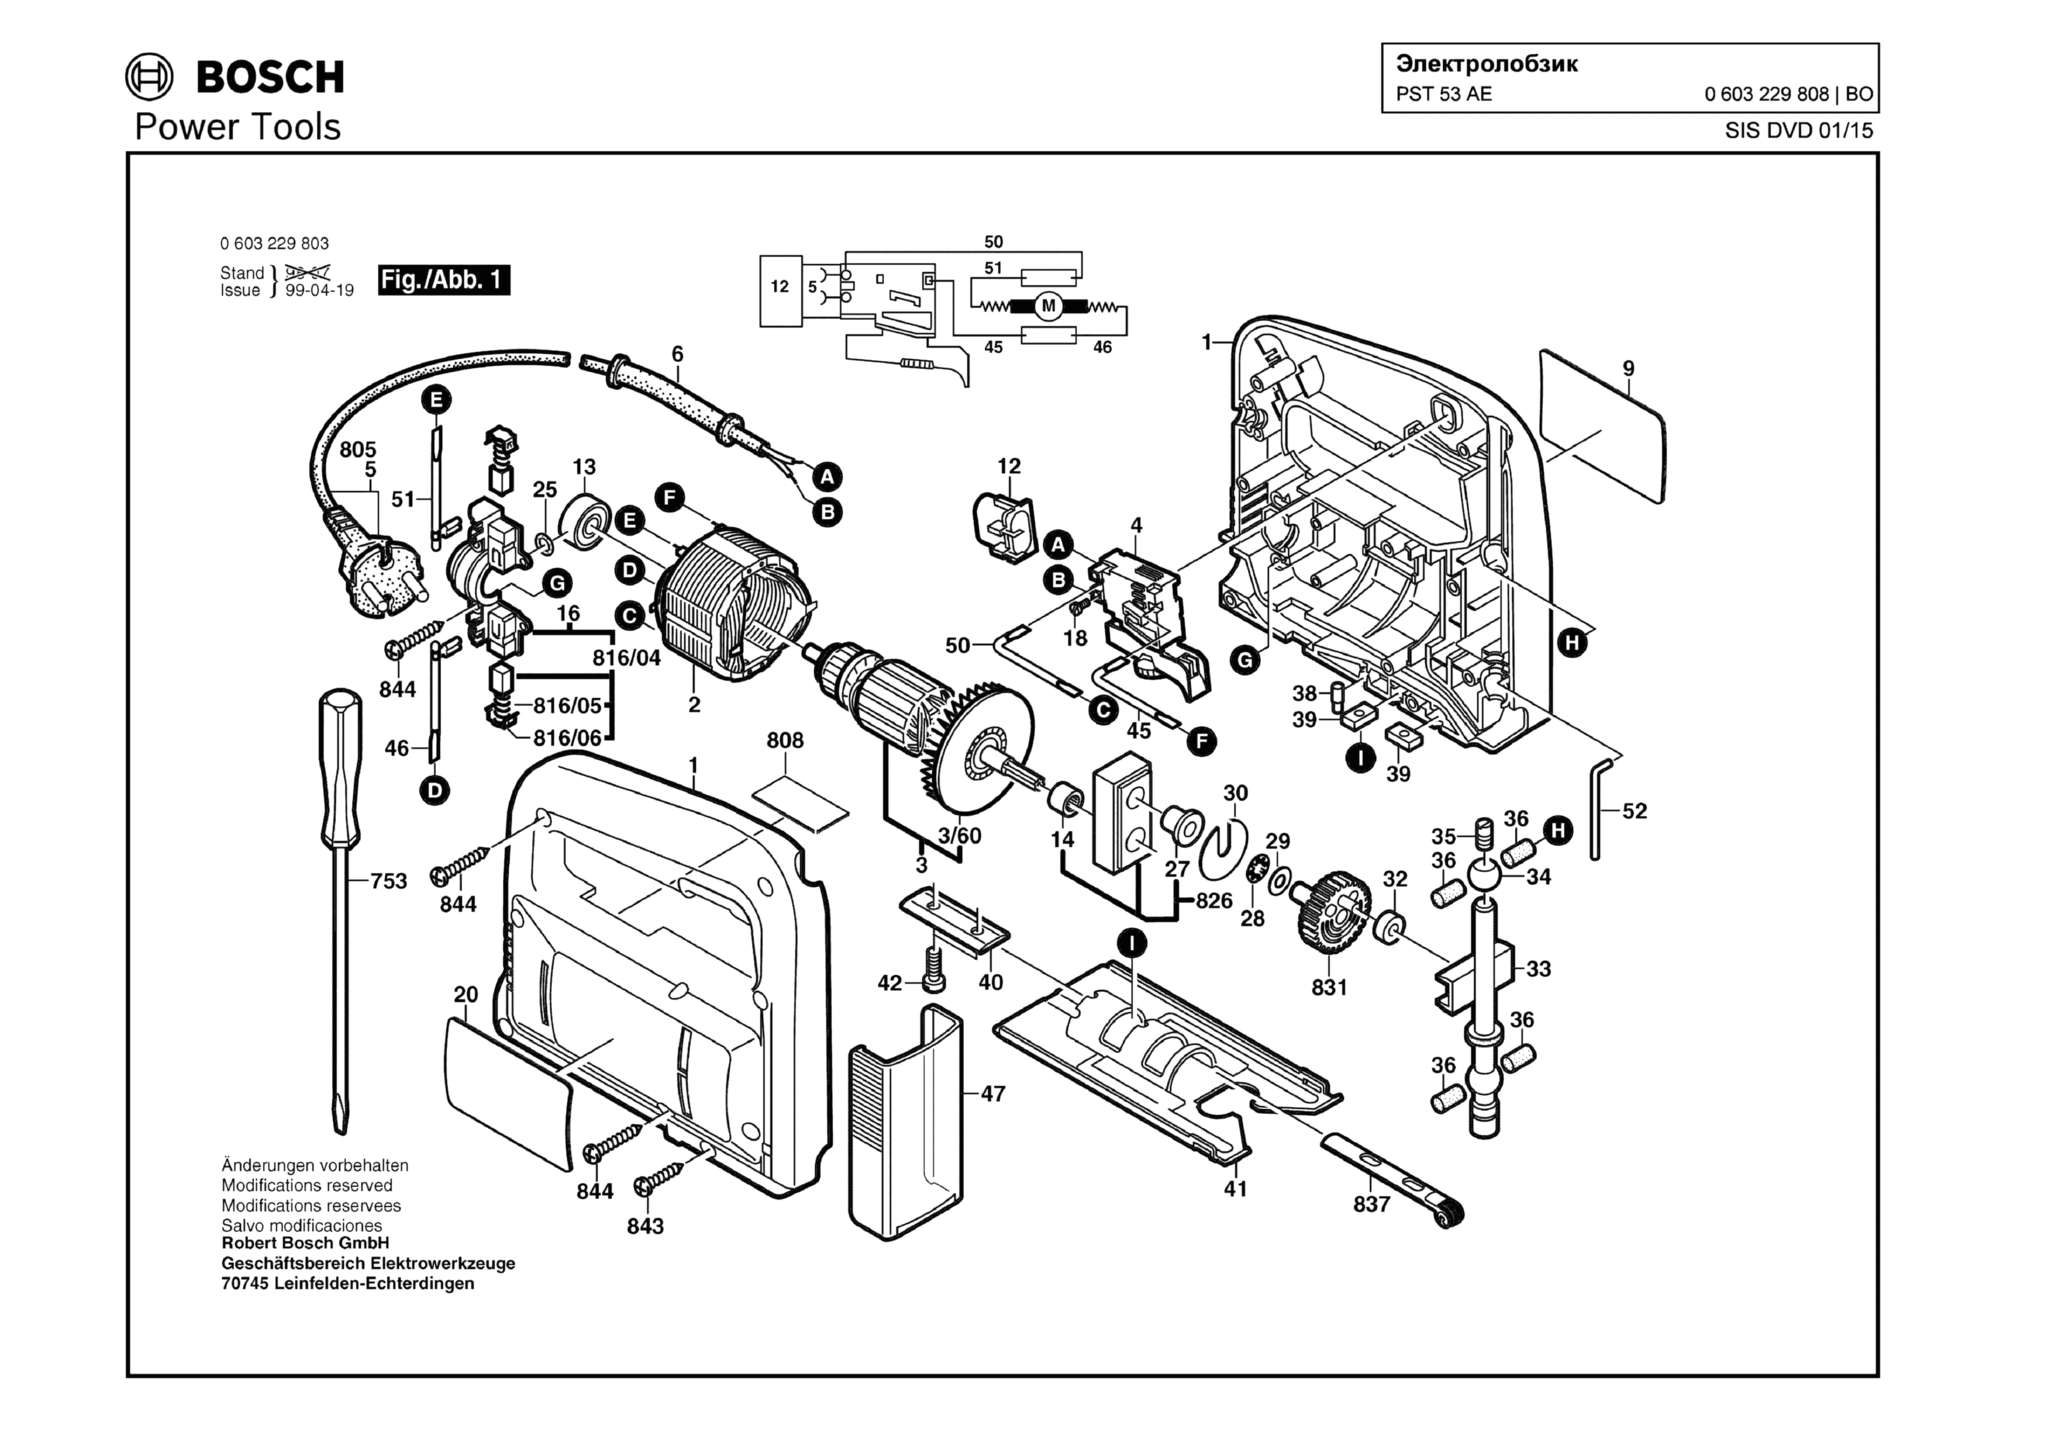 Запчасти, схема и деталировка Bosch PST 53 AE (ТИП 0603229808)